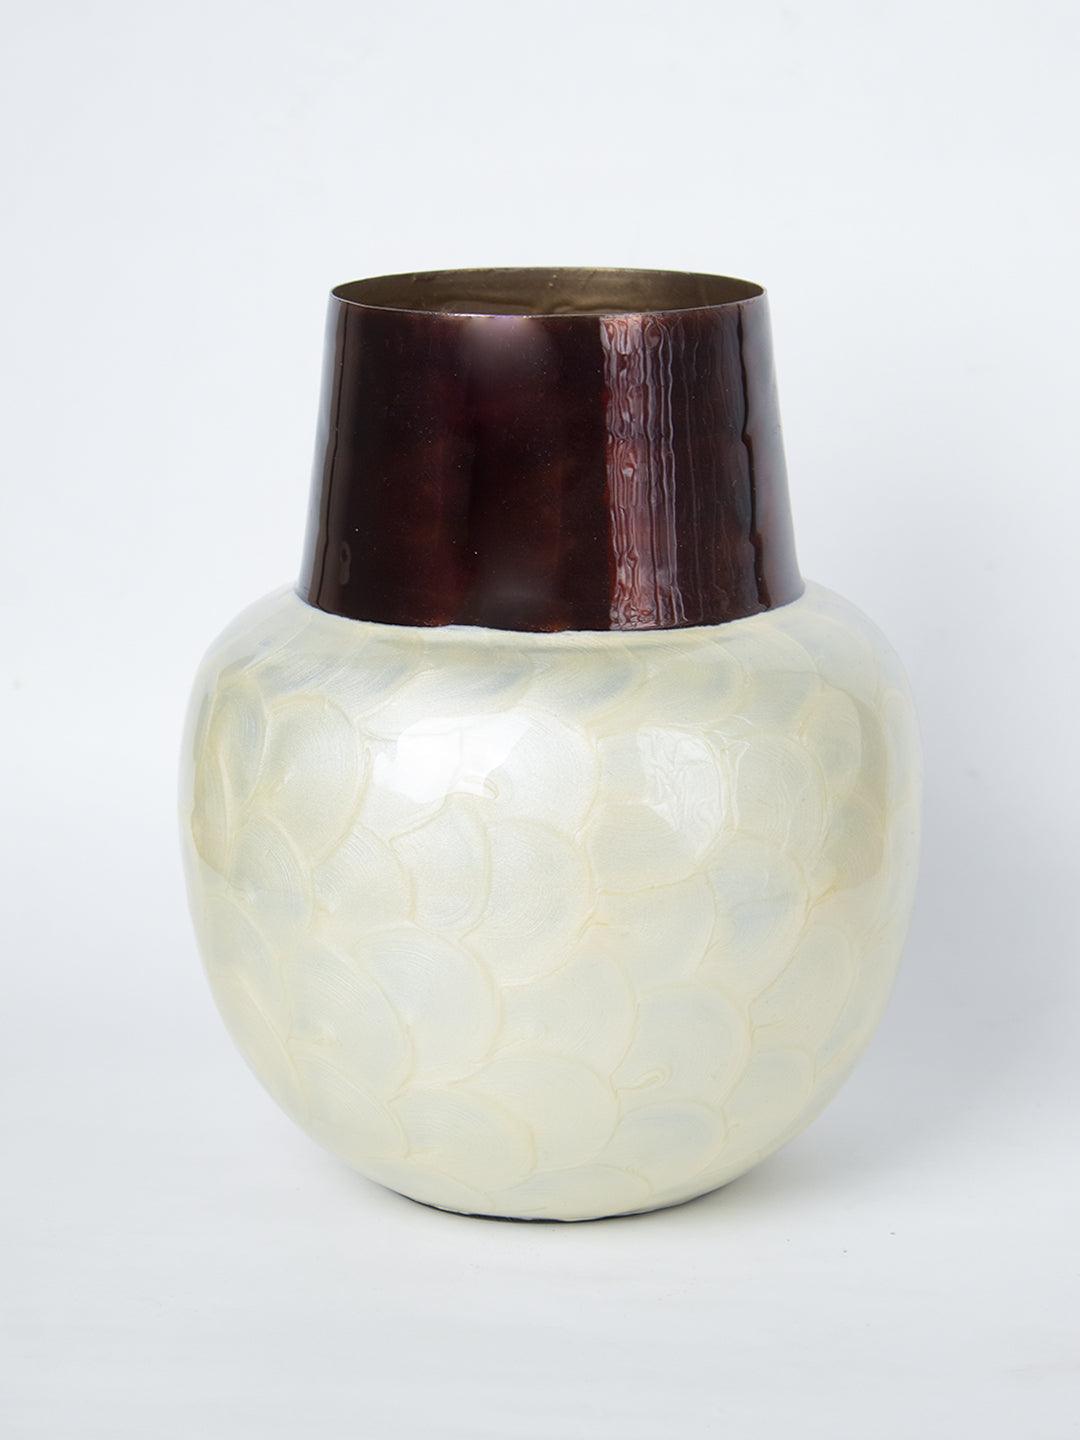 Ivory Globular Shape Pot Vase (Ivory Enamel) - 2